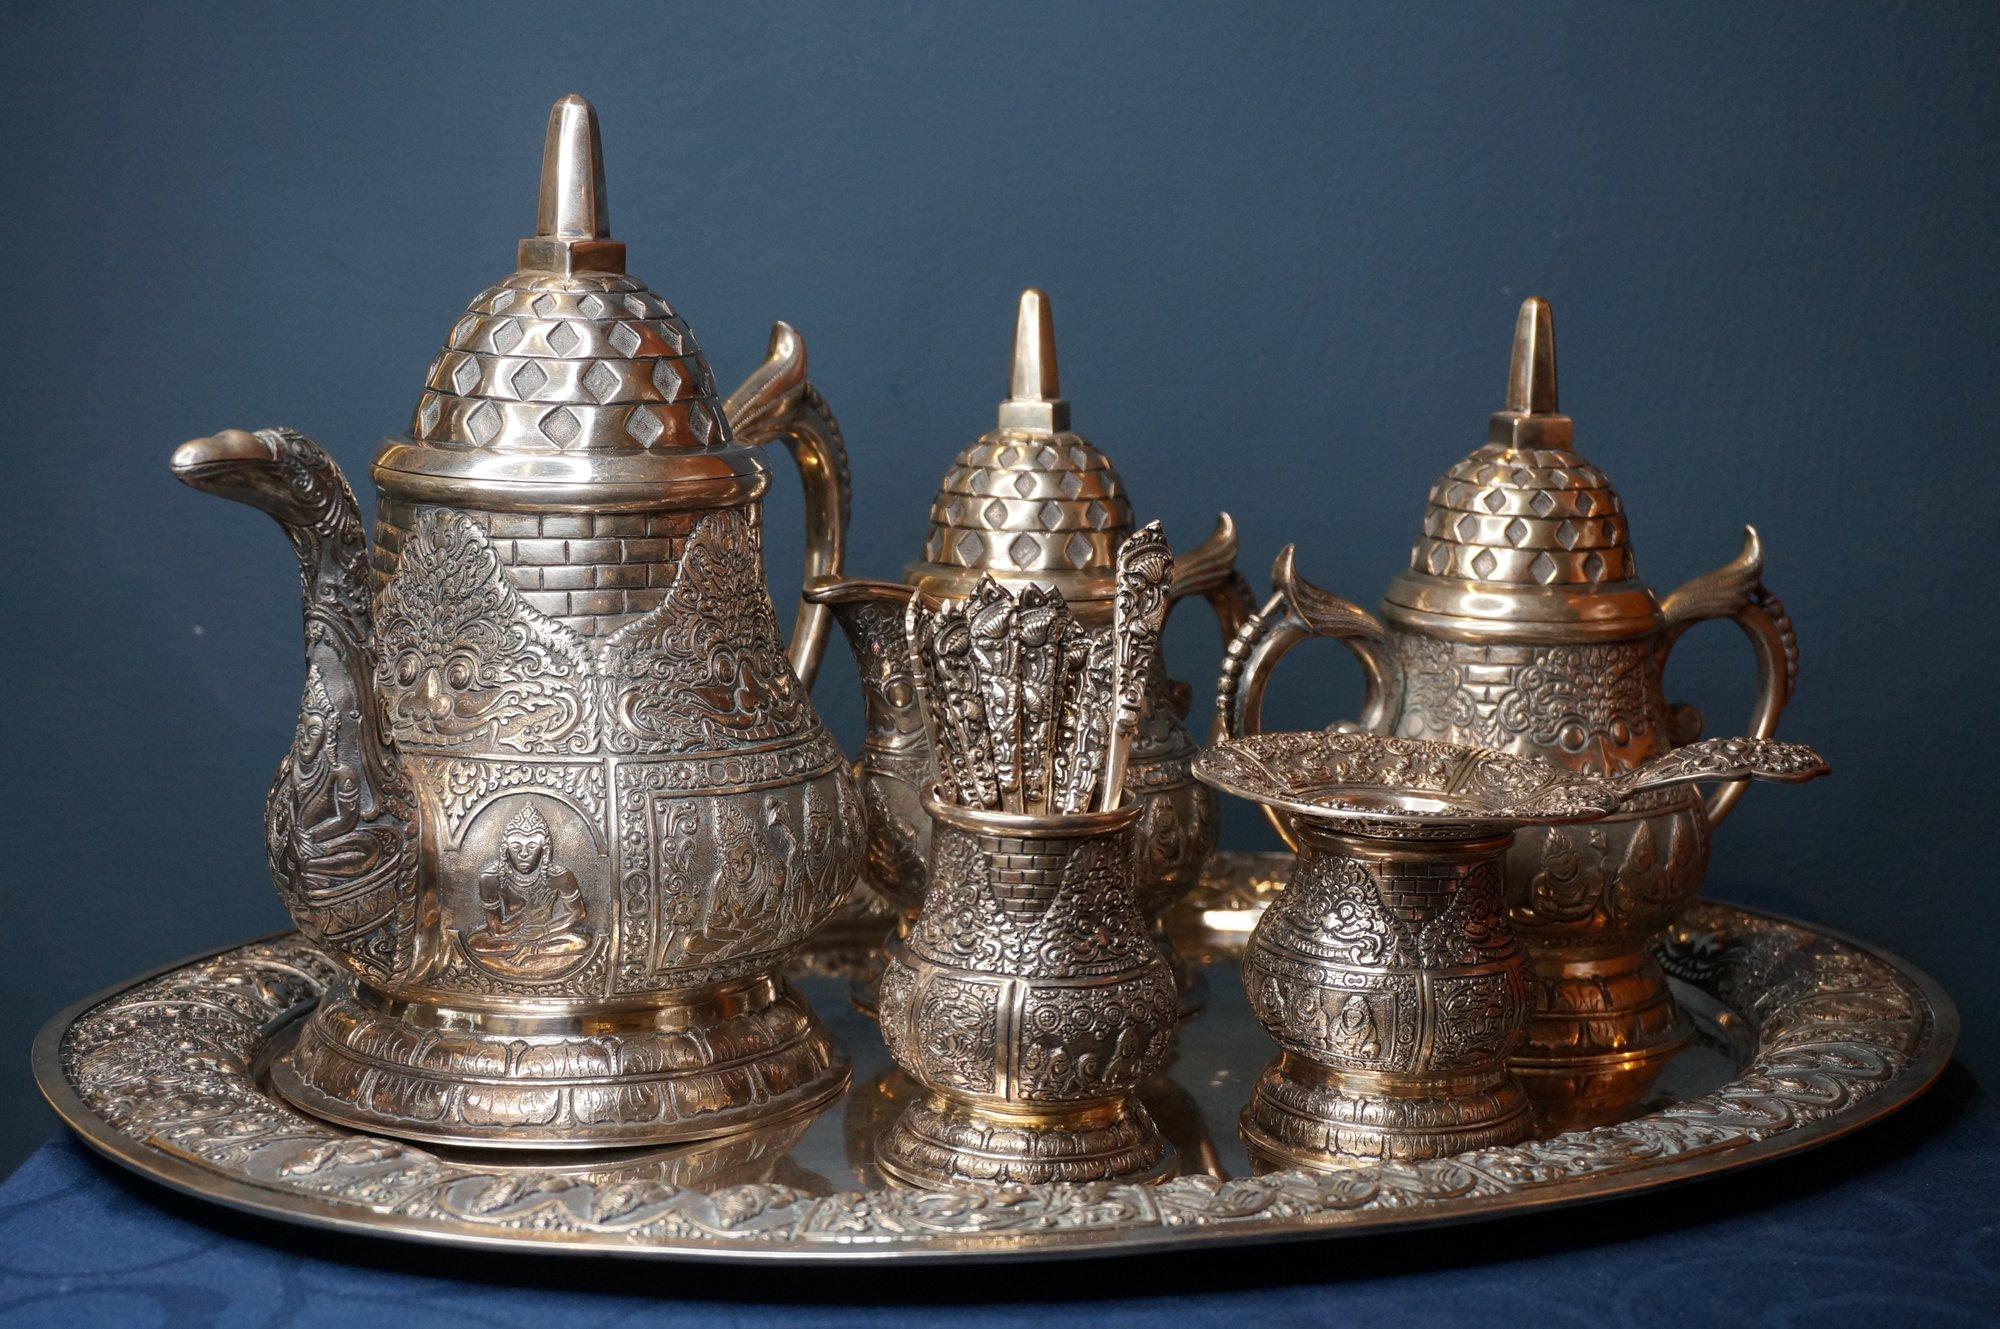 Seltenes, kunstvoll verziertes Teeservice aus Jogja mit ungewöhnlichem Dekor aus Boddhisatva, Taotie-Masken, Vögeln und pagodenförmigen Deckeln. Das Teeservice besteht aus einer Teekanne, einer Kaffeekanne, einer Zuckerdose, einer Vase mit 12